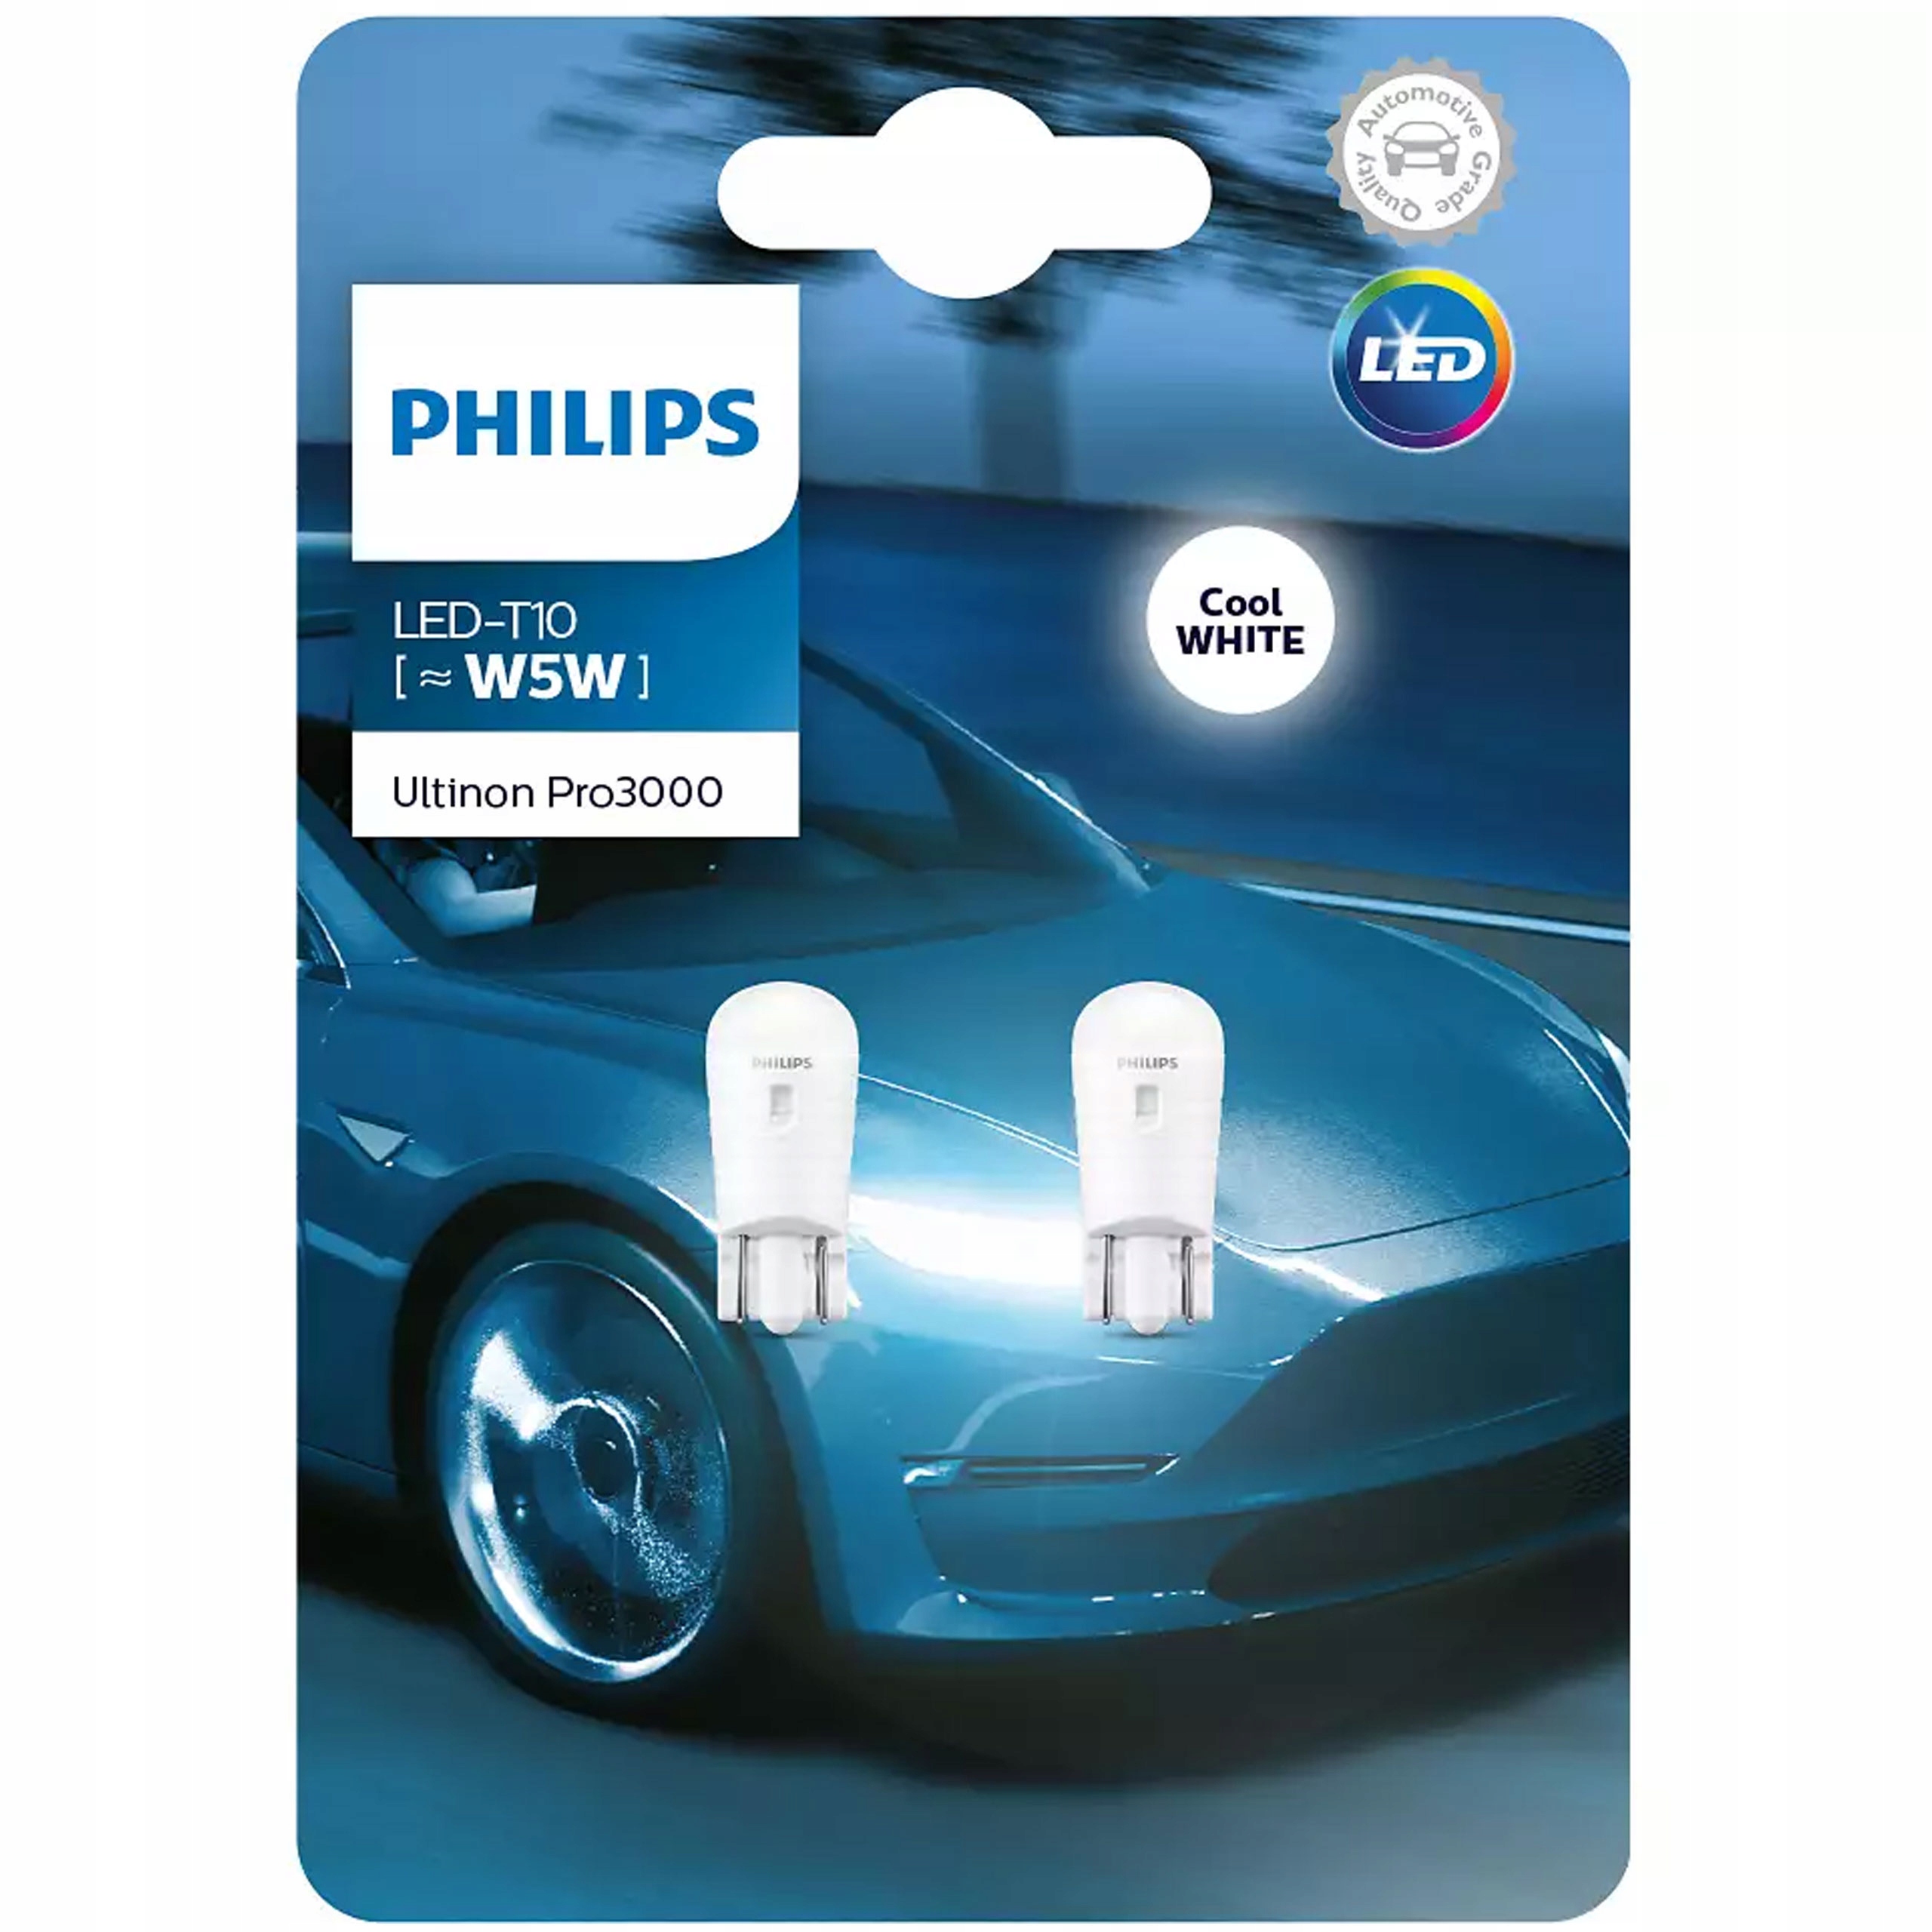 Филипс w5w. Набор автоламп led Philips 11961u30cwb2 w5w. Лампа t10 Philips (w5w) 12v Ultinon pro3000 6000k. W5w t10 Philips Ultinon led. Philips Ultinon pro3000 w5w.